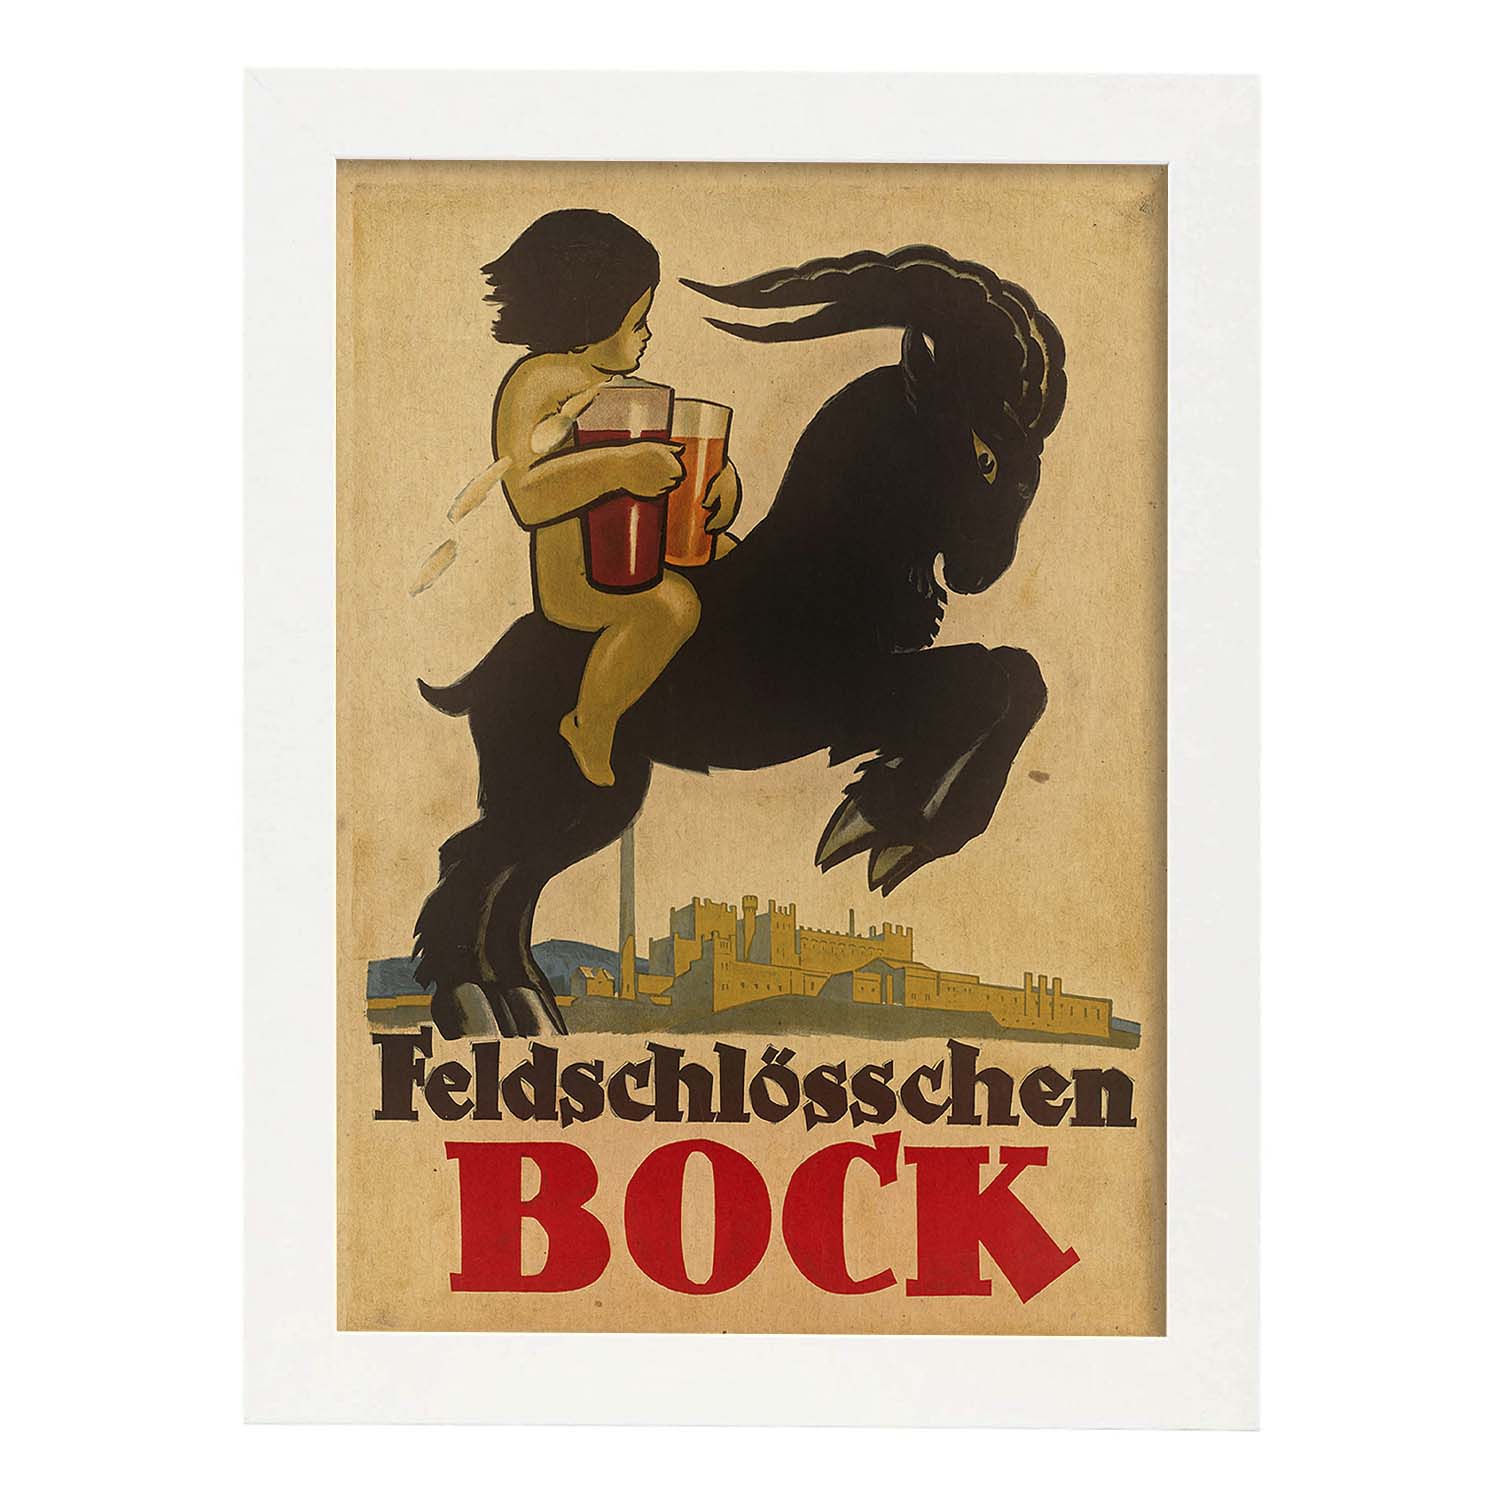 Poster vintage. Anuncio vintage de feldschlösschen BOCK.-Artwork-Nacnic-A3-Marco Blanco-Nacnic Estudio SL